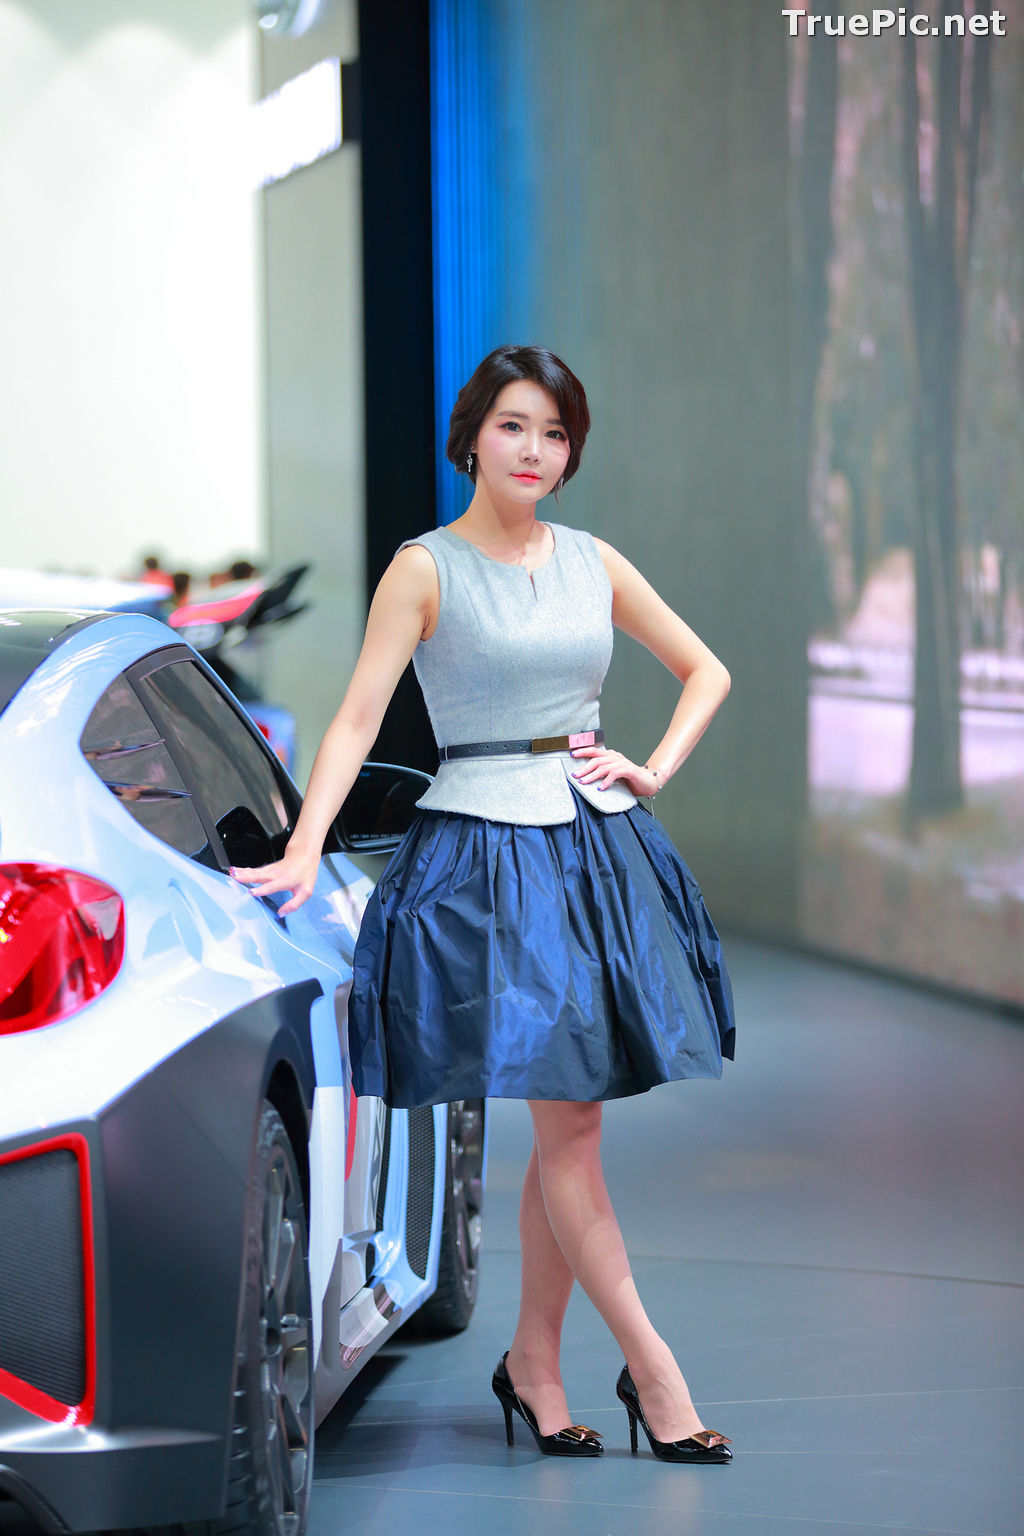 Image Best Beautiful Images Of Korean Racing Queen Han Ga Eun #3 - TruePic.net - Picture-45